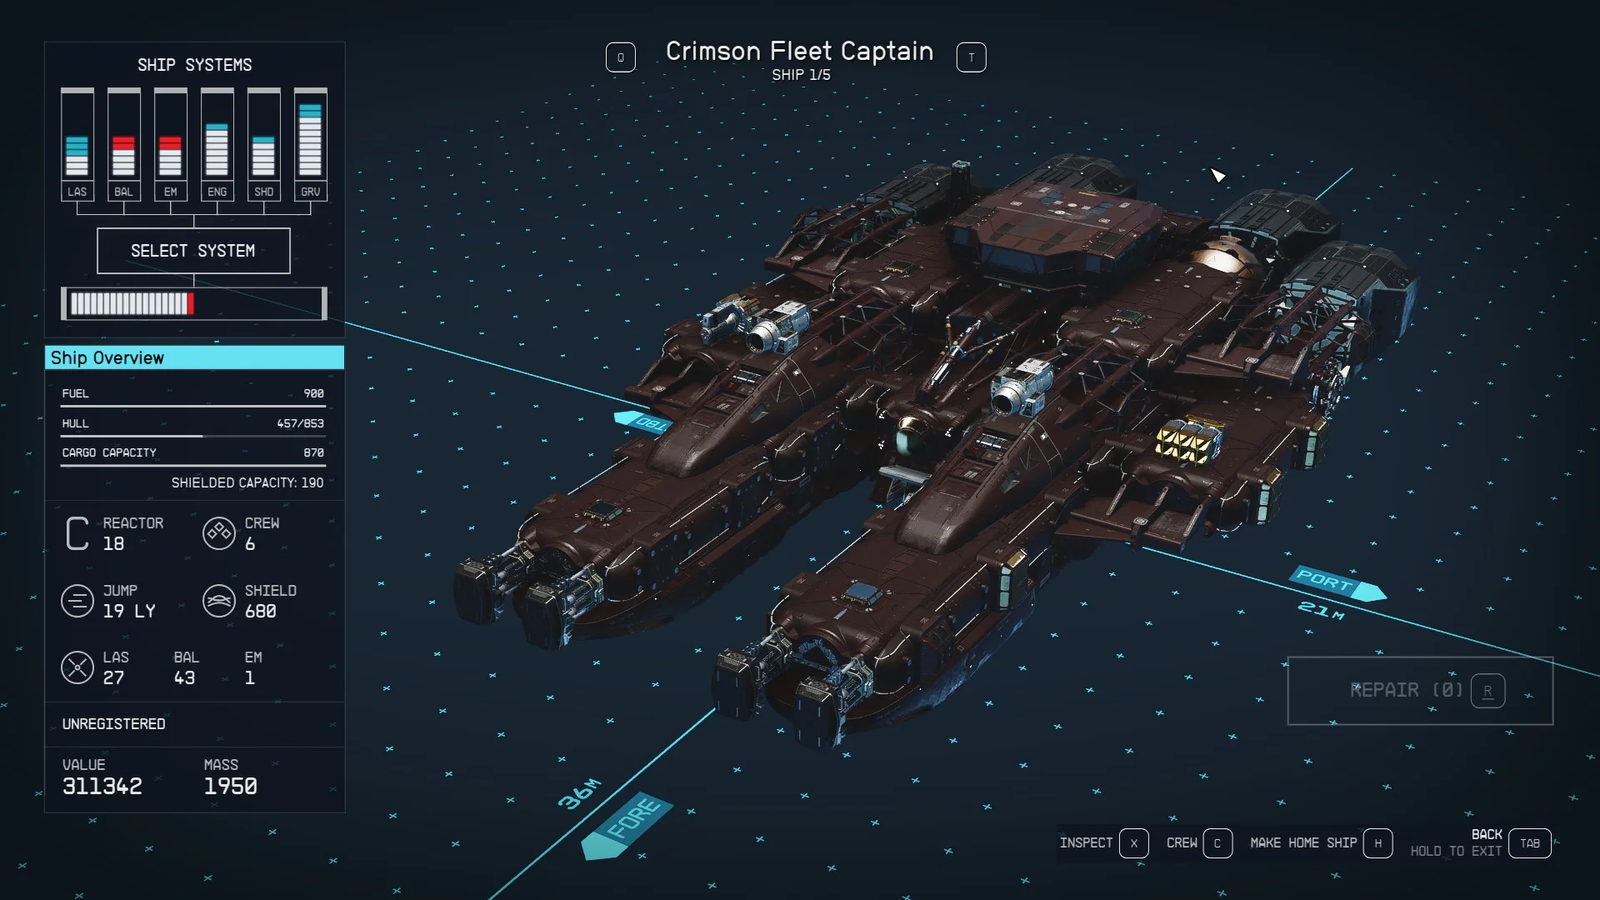 starfield captured crimson fleet captain ship